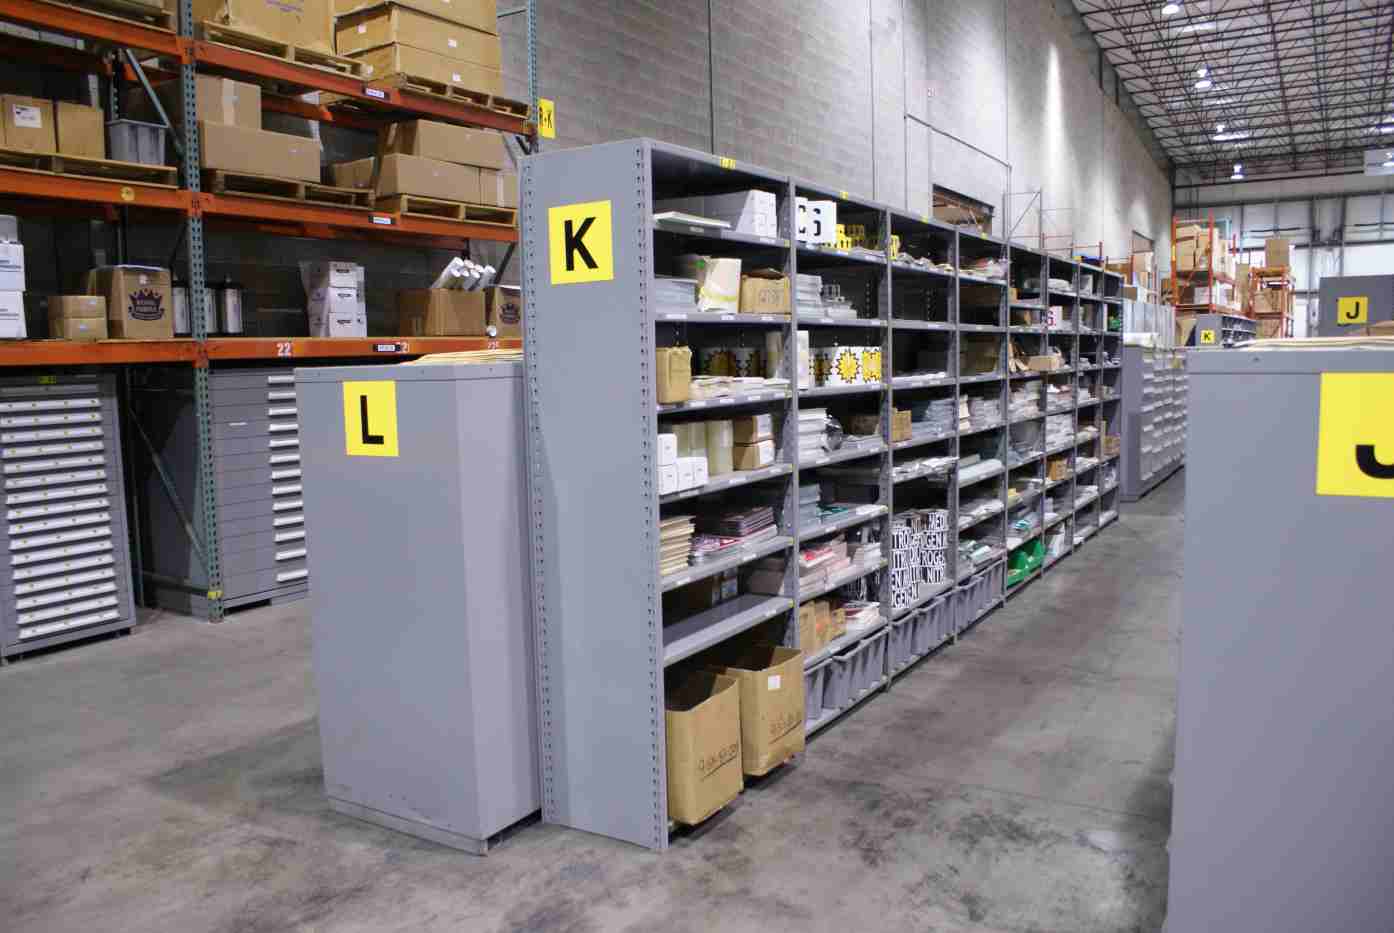 lyon-8000-series-shelving-pallet-rack-and-modular-drawers-installed